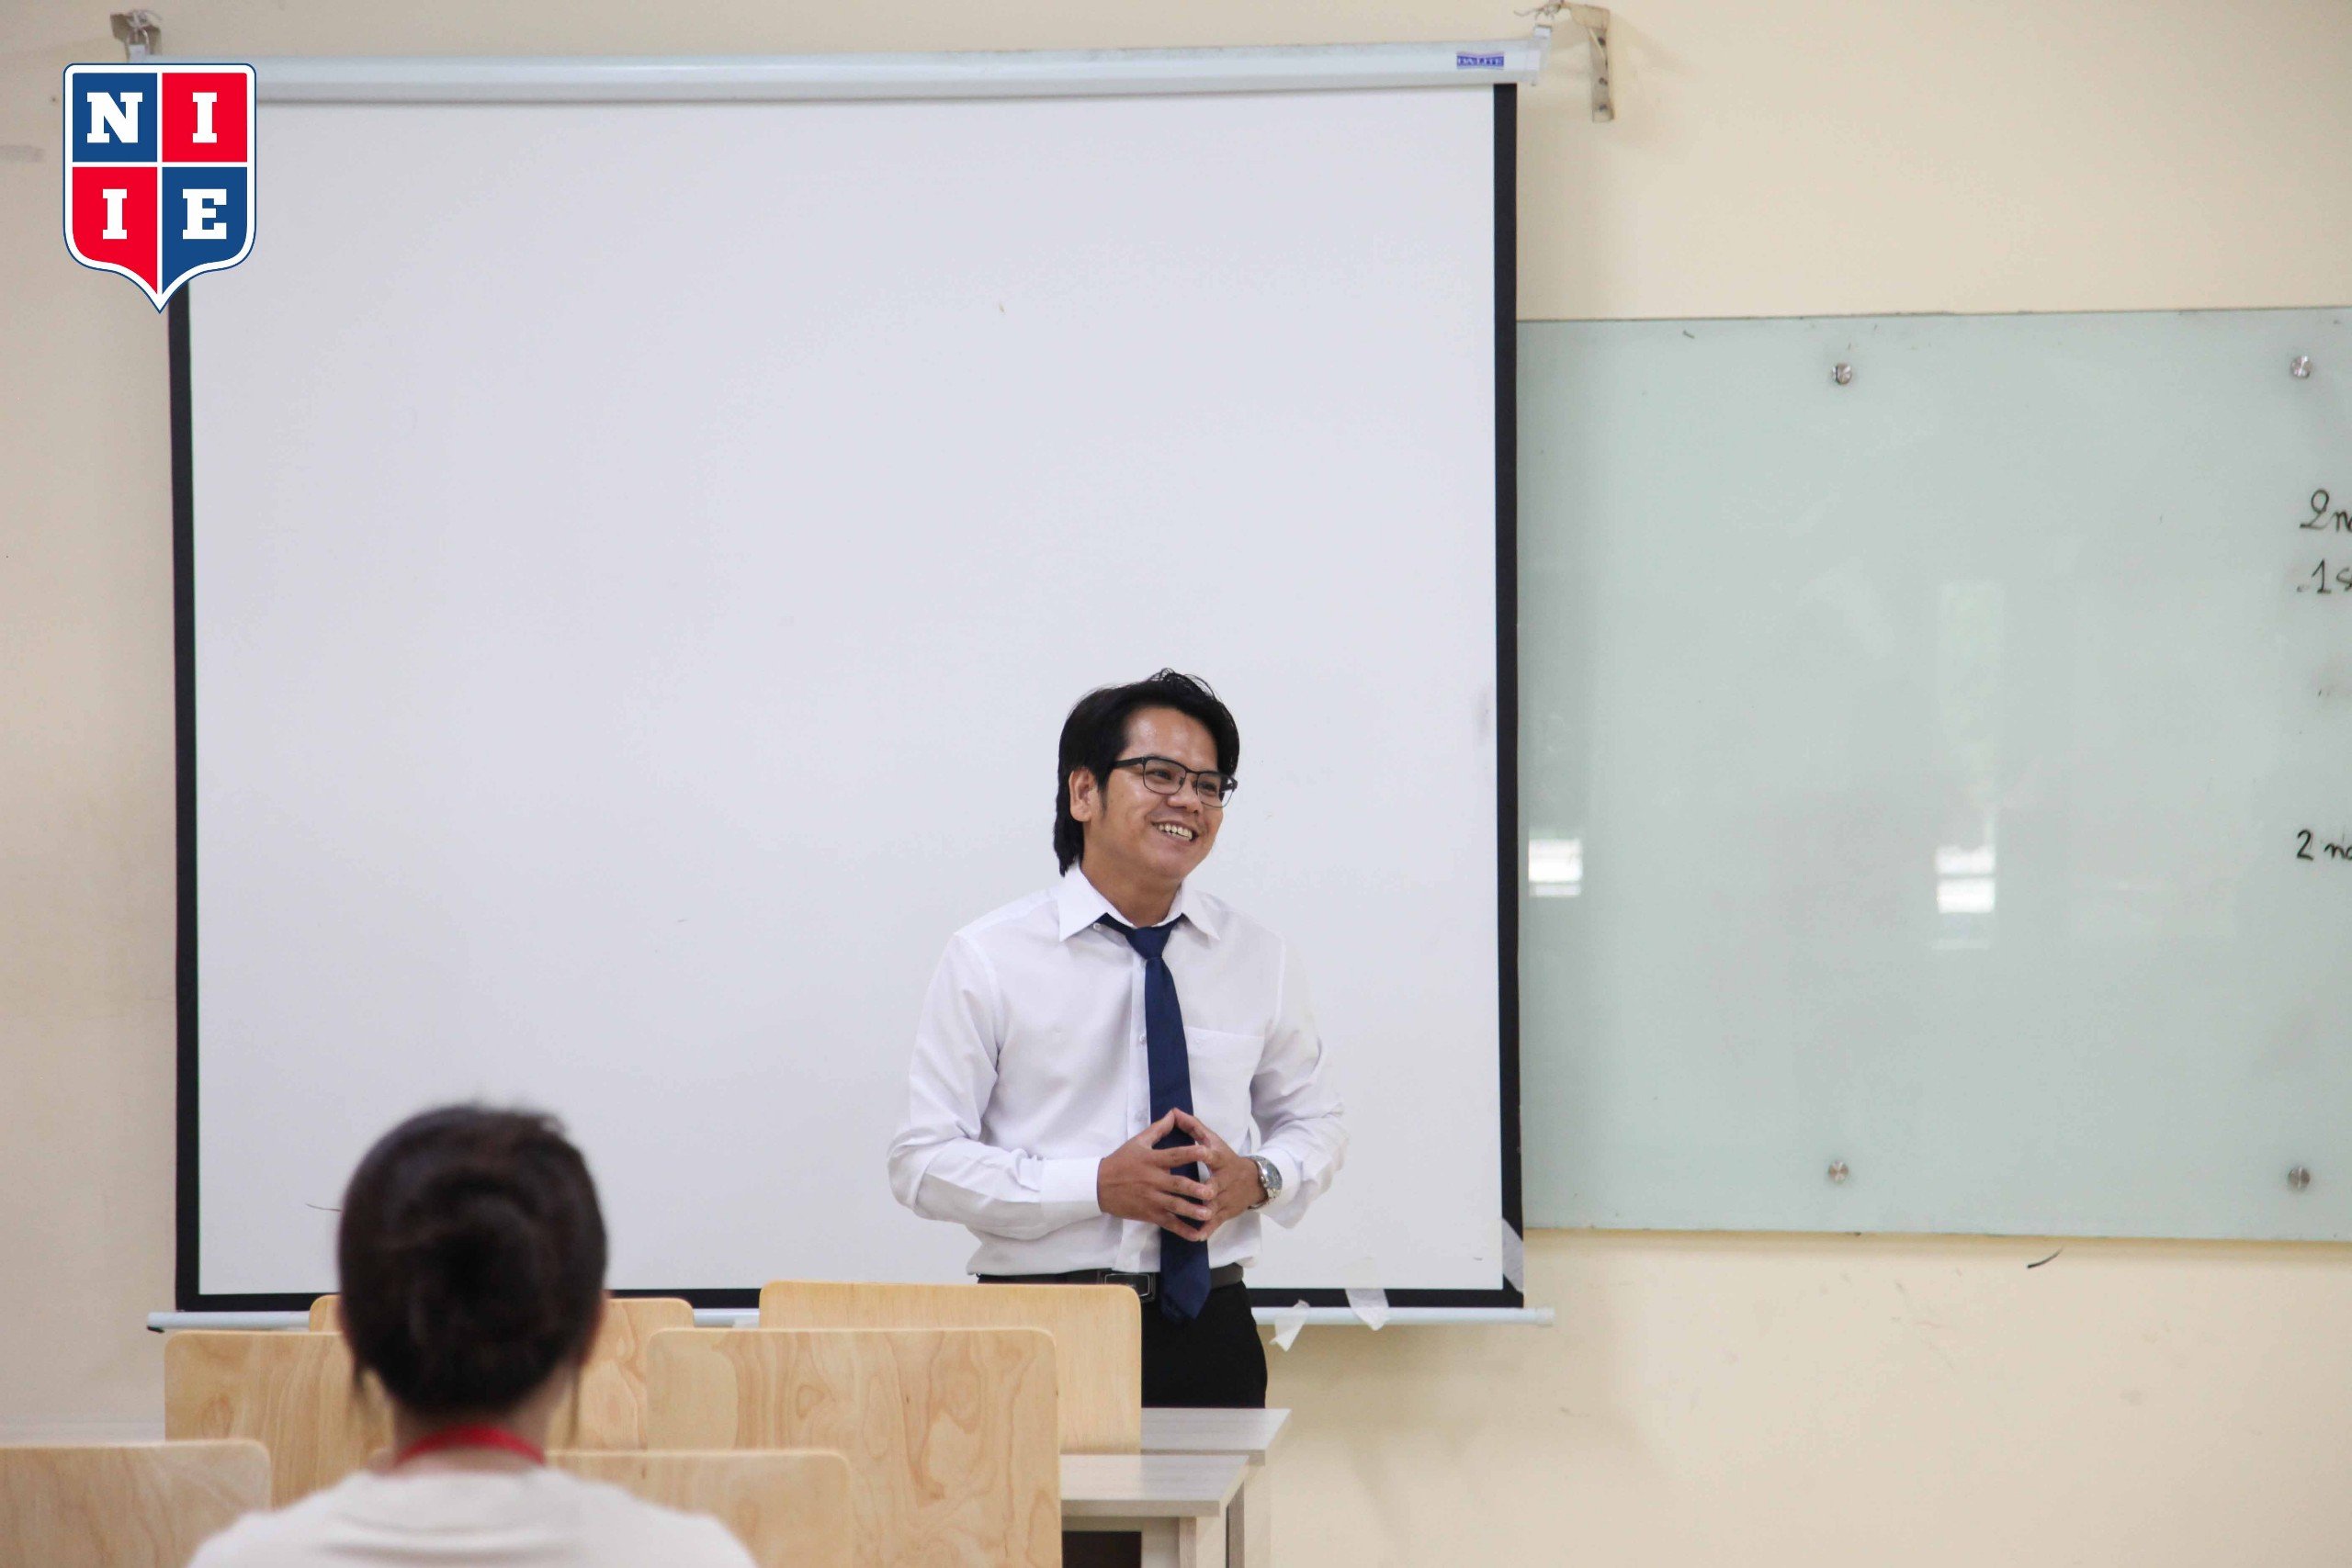 ThS. Trần Ngọc Khánh là một chuyên gia với hơn 14 năm kinh nghiệm trong lĩnh vực Thuế, Kế toán, Kiểm toán.